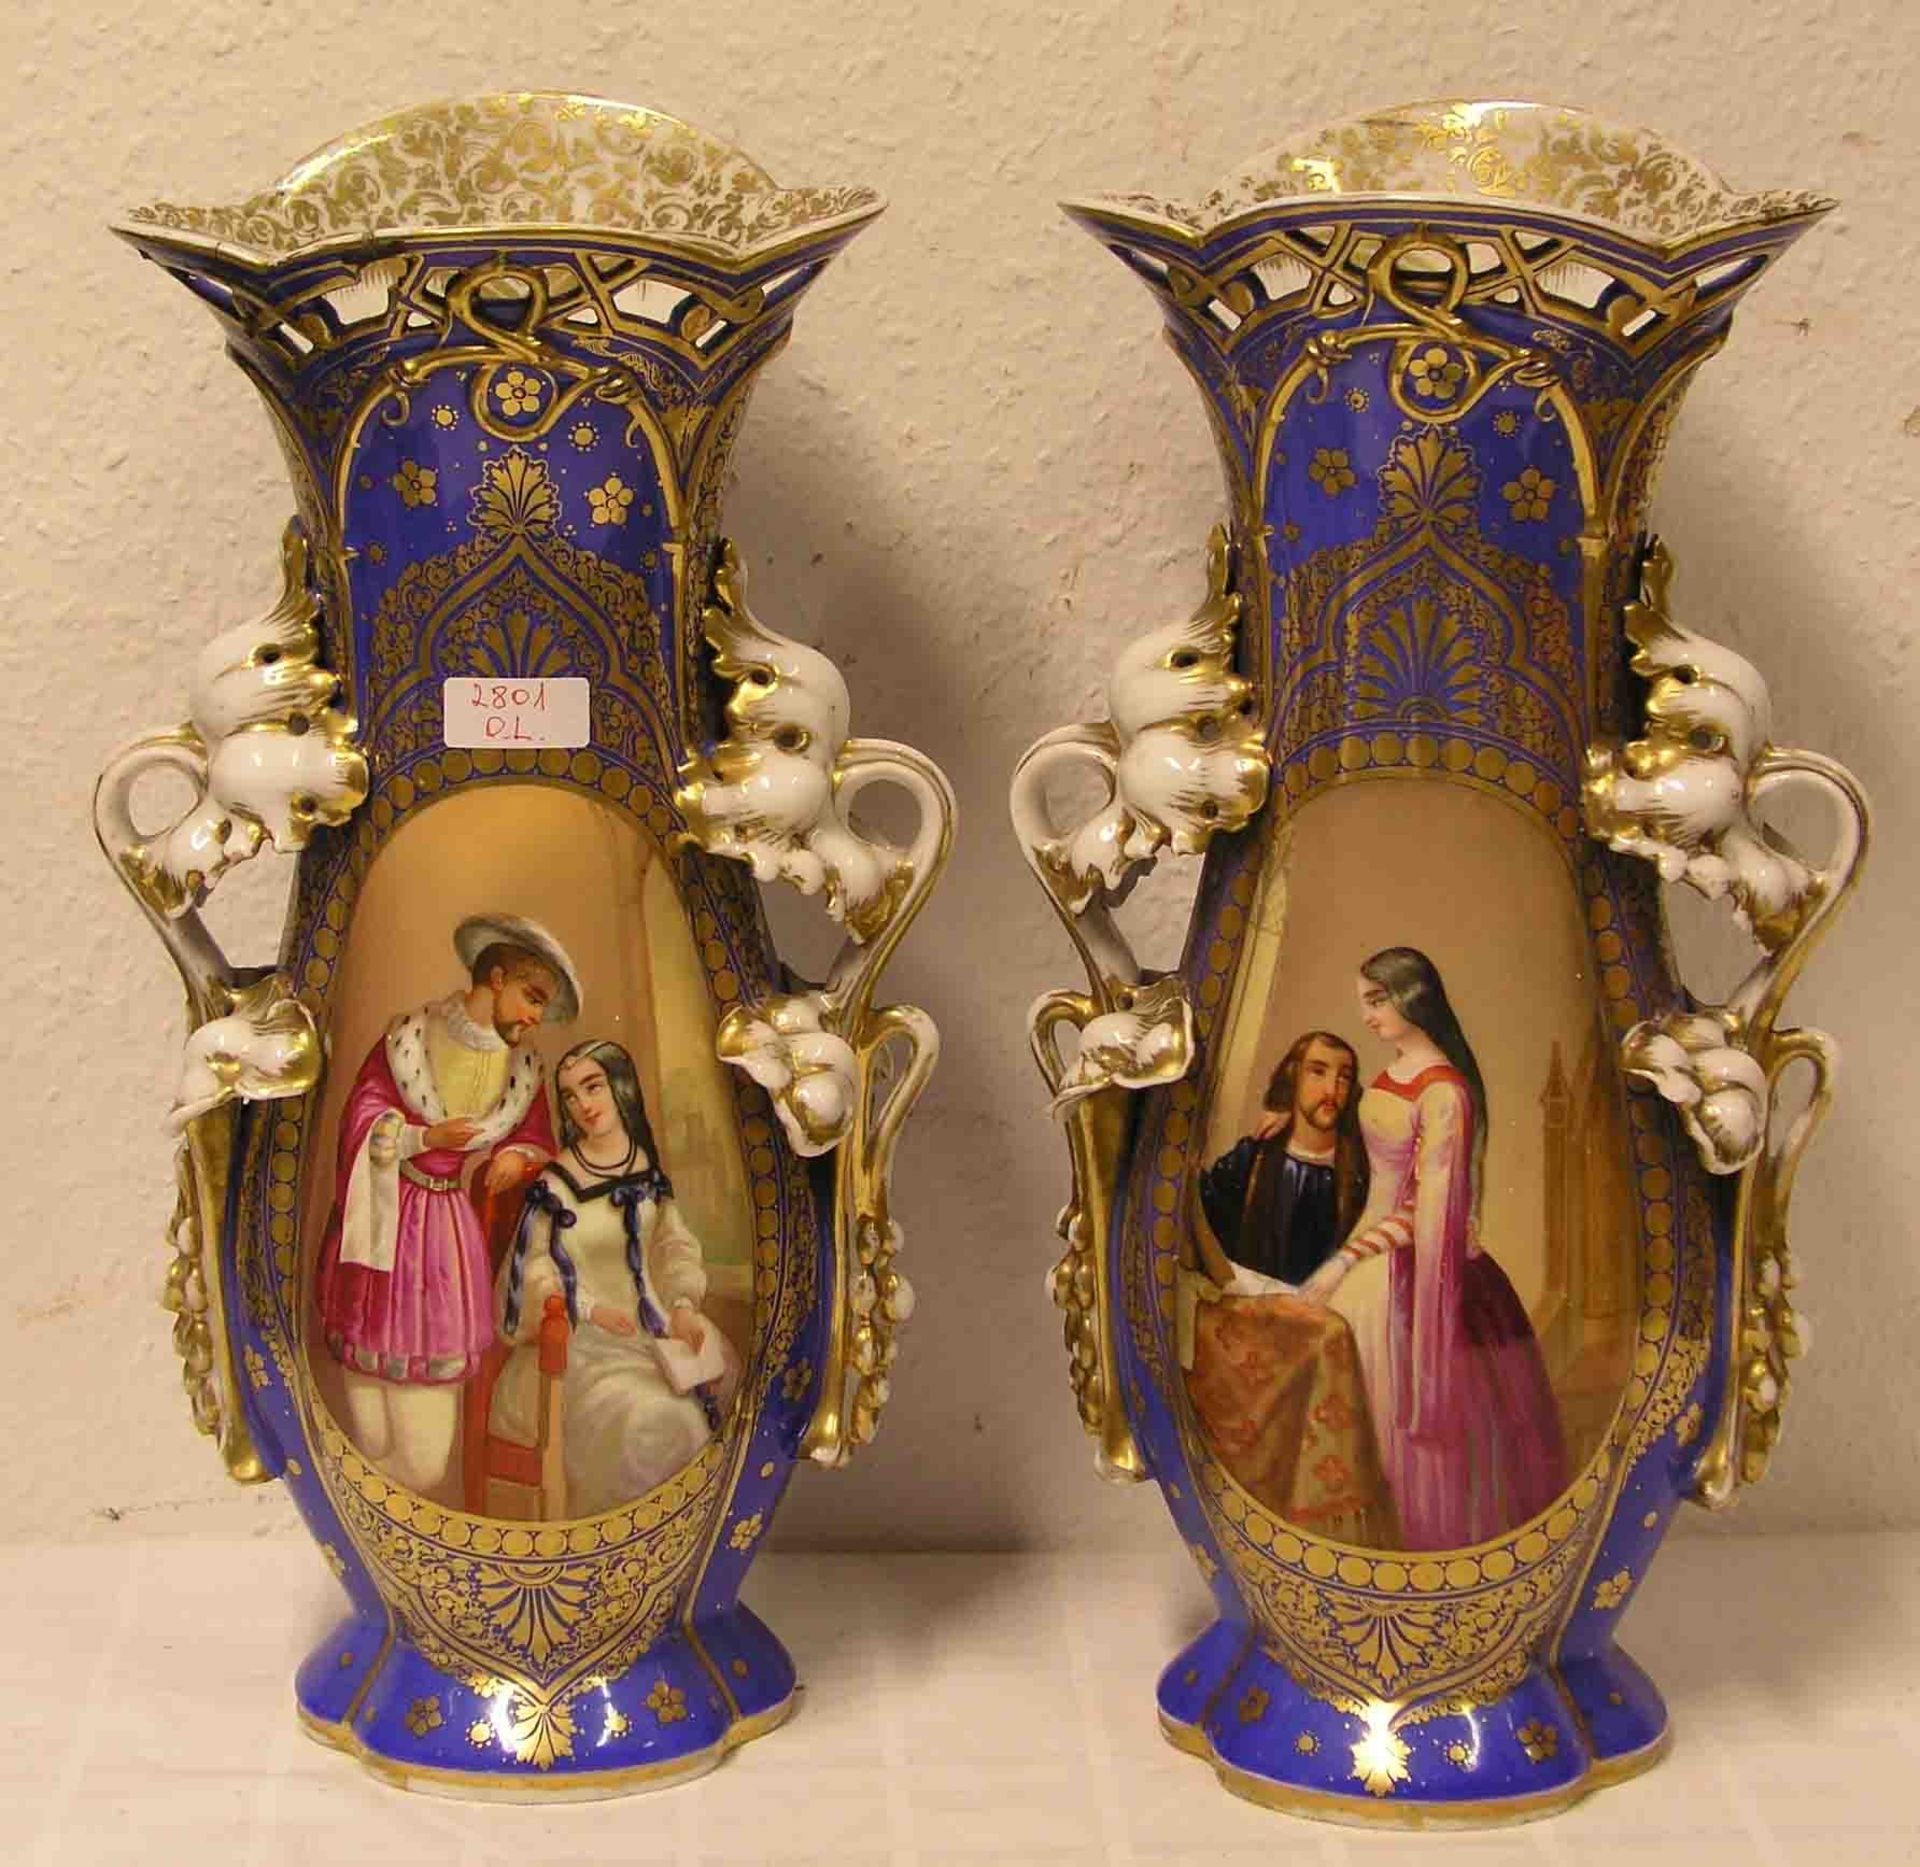 Paar Vasen. Porzellan. 19. Jh. Handbemalt, zum Teil berieben und bestoßen. Höhe: 42cm.